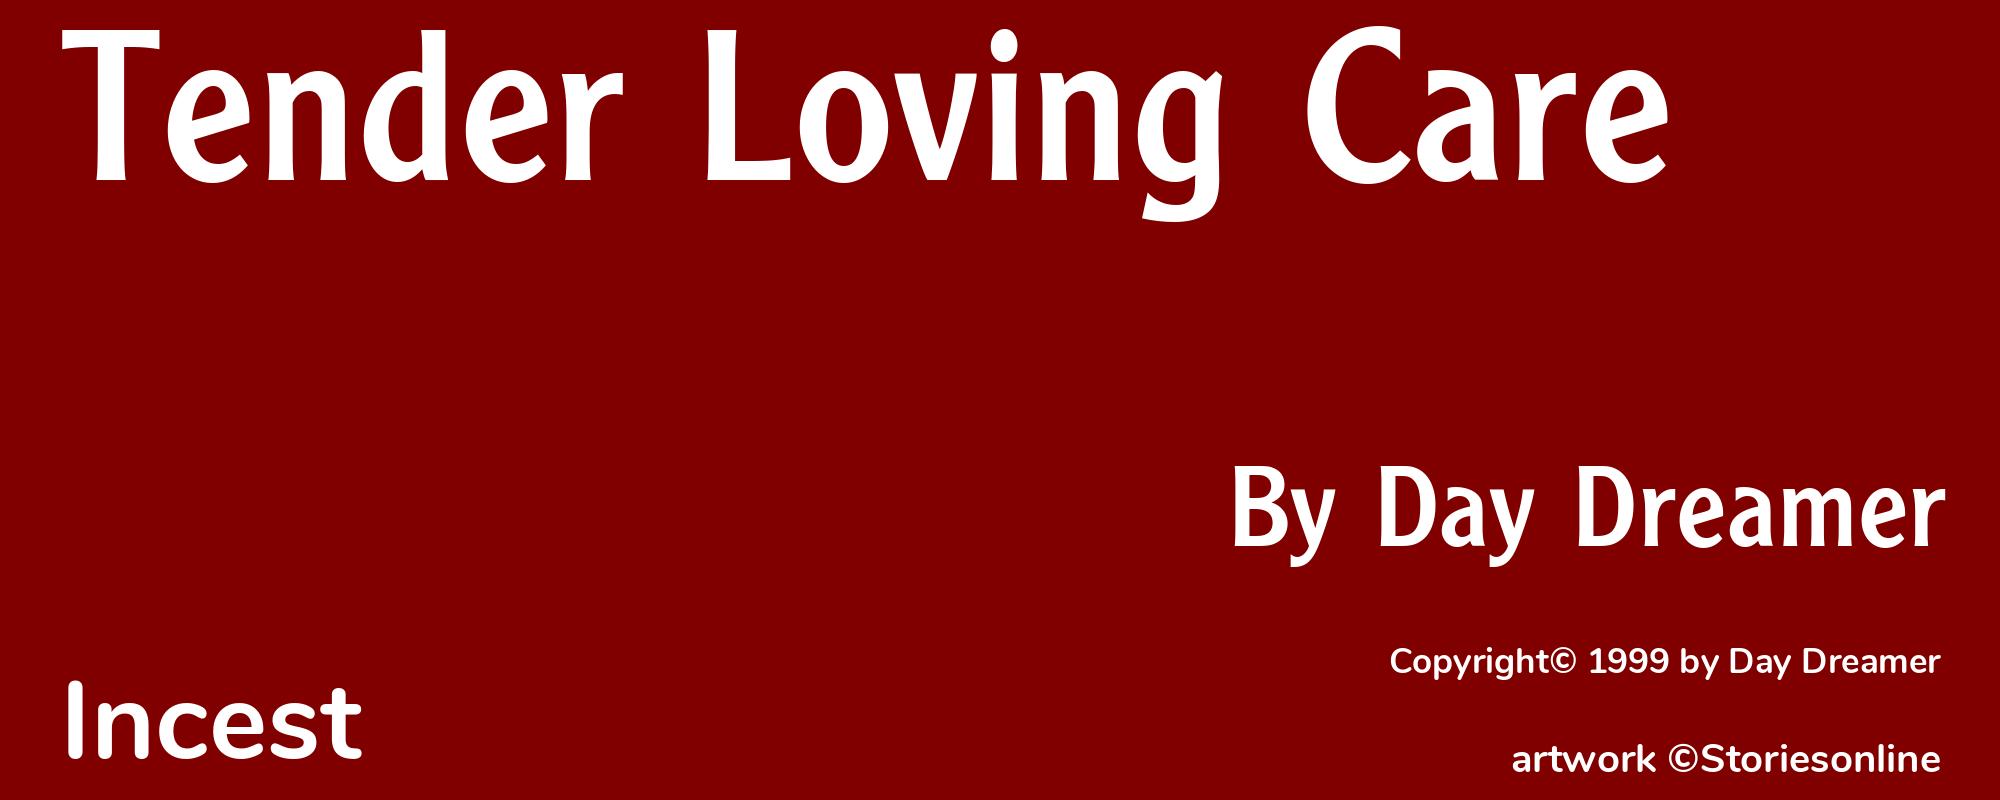 Tender Loving Care - Cover